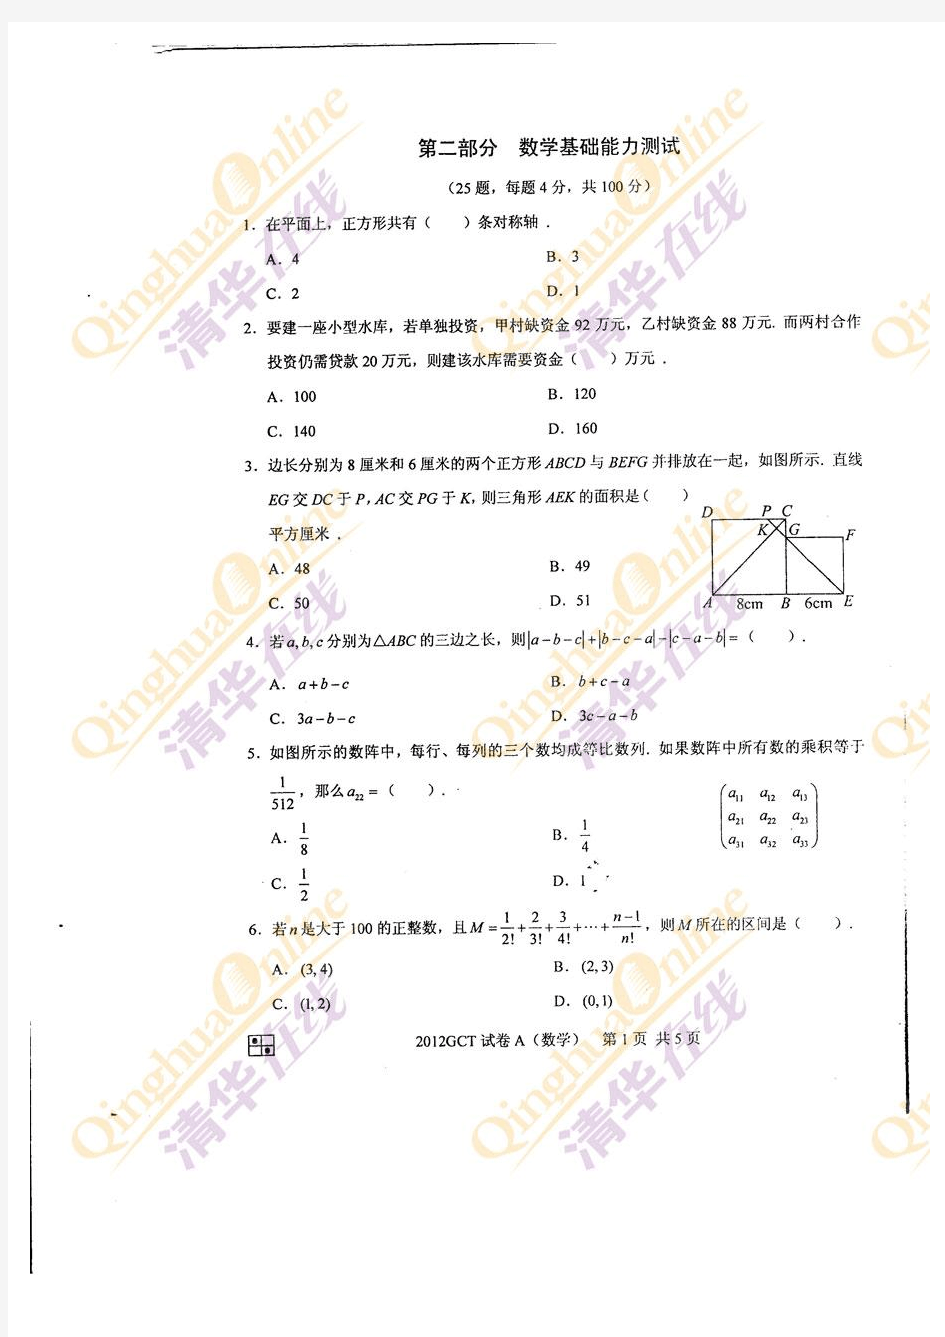 2012年GCT数学A卷试题及答案